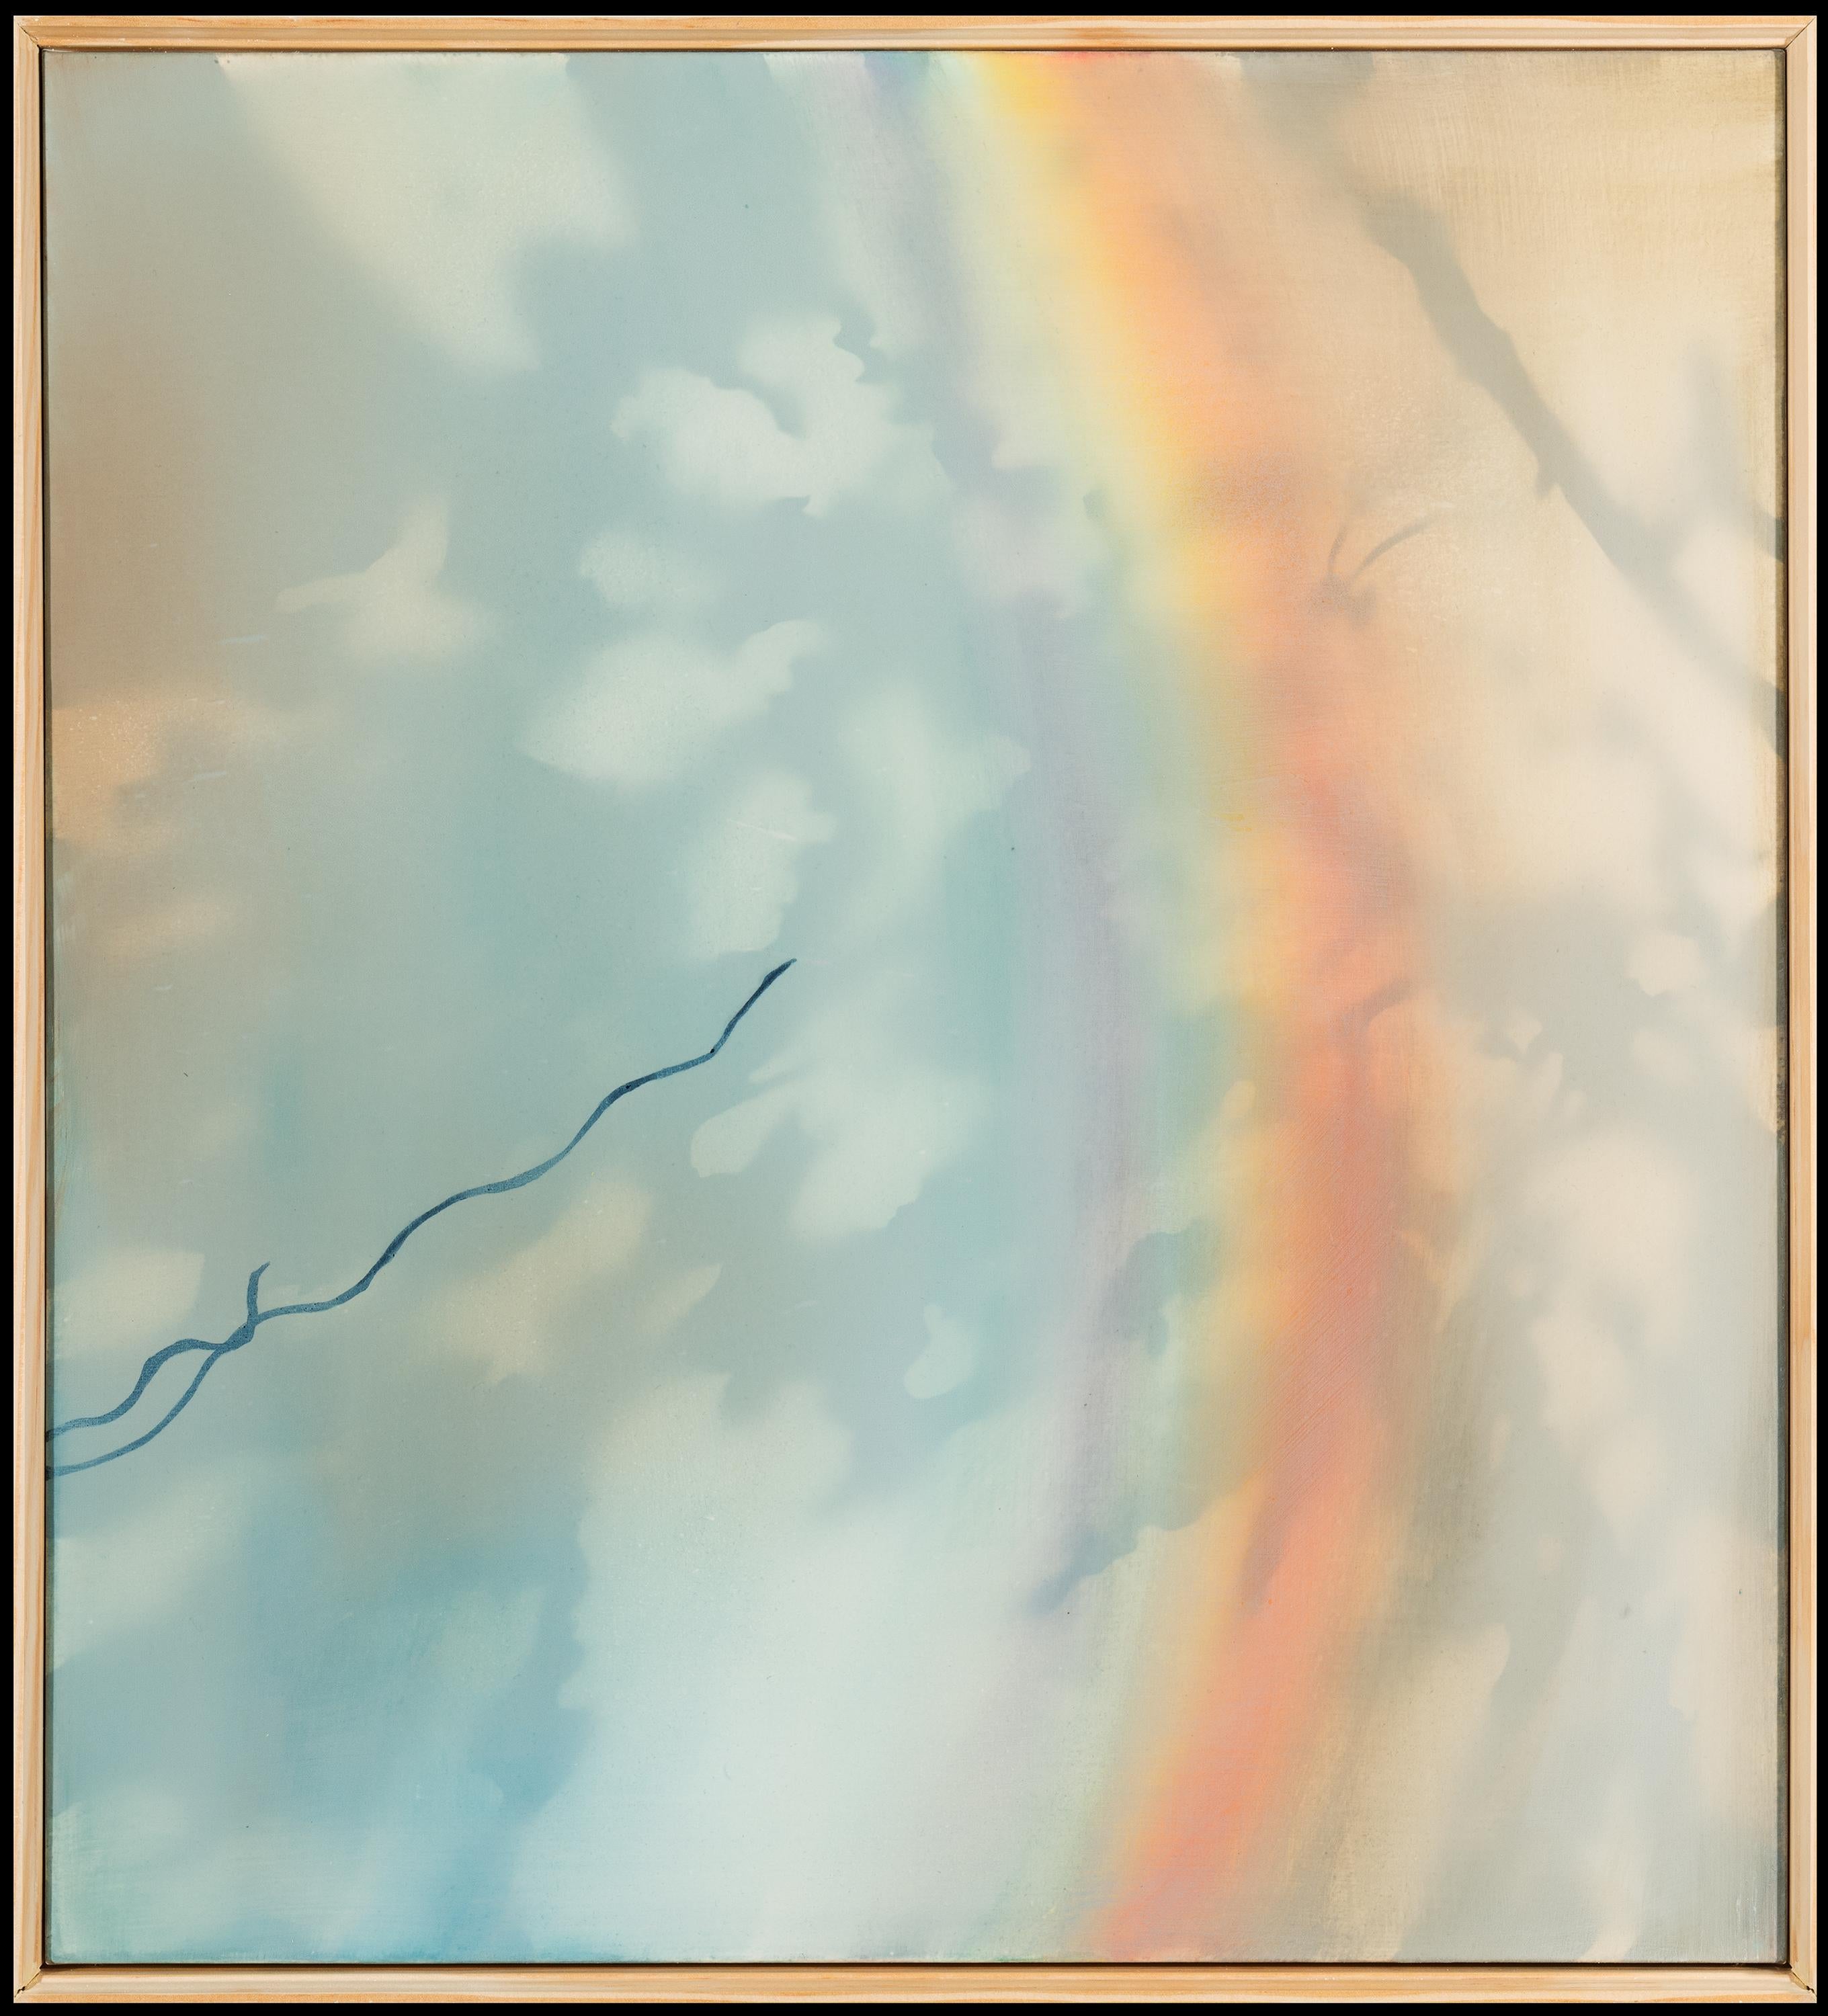 WATER UND Licht (THE THIEF) - Regenbogen, Frühling, Naturgemälde von Kudzu Vine